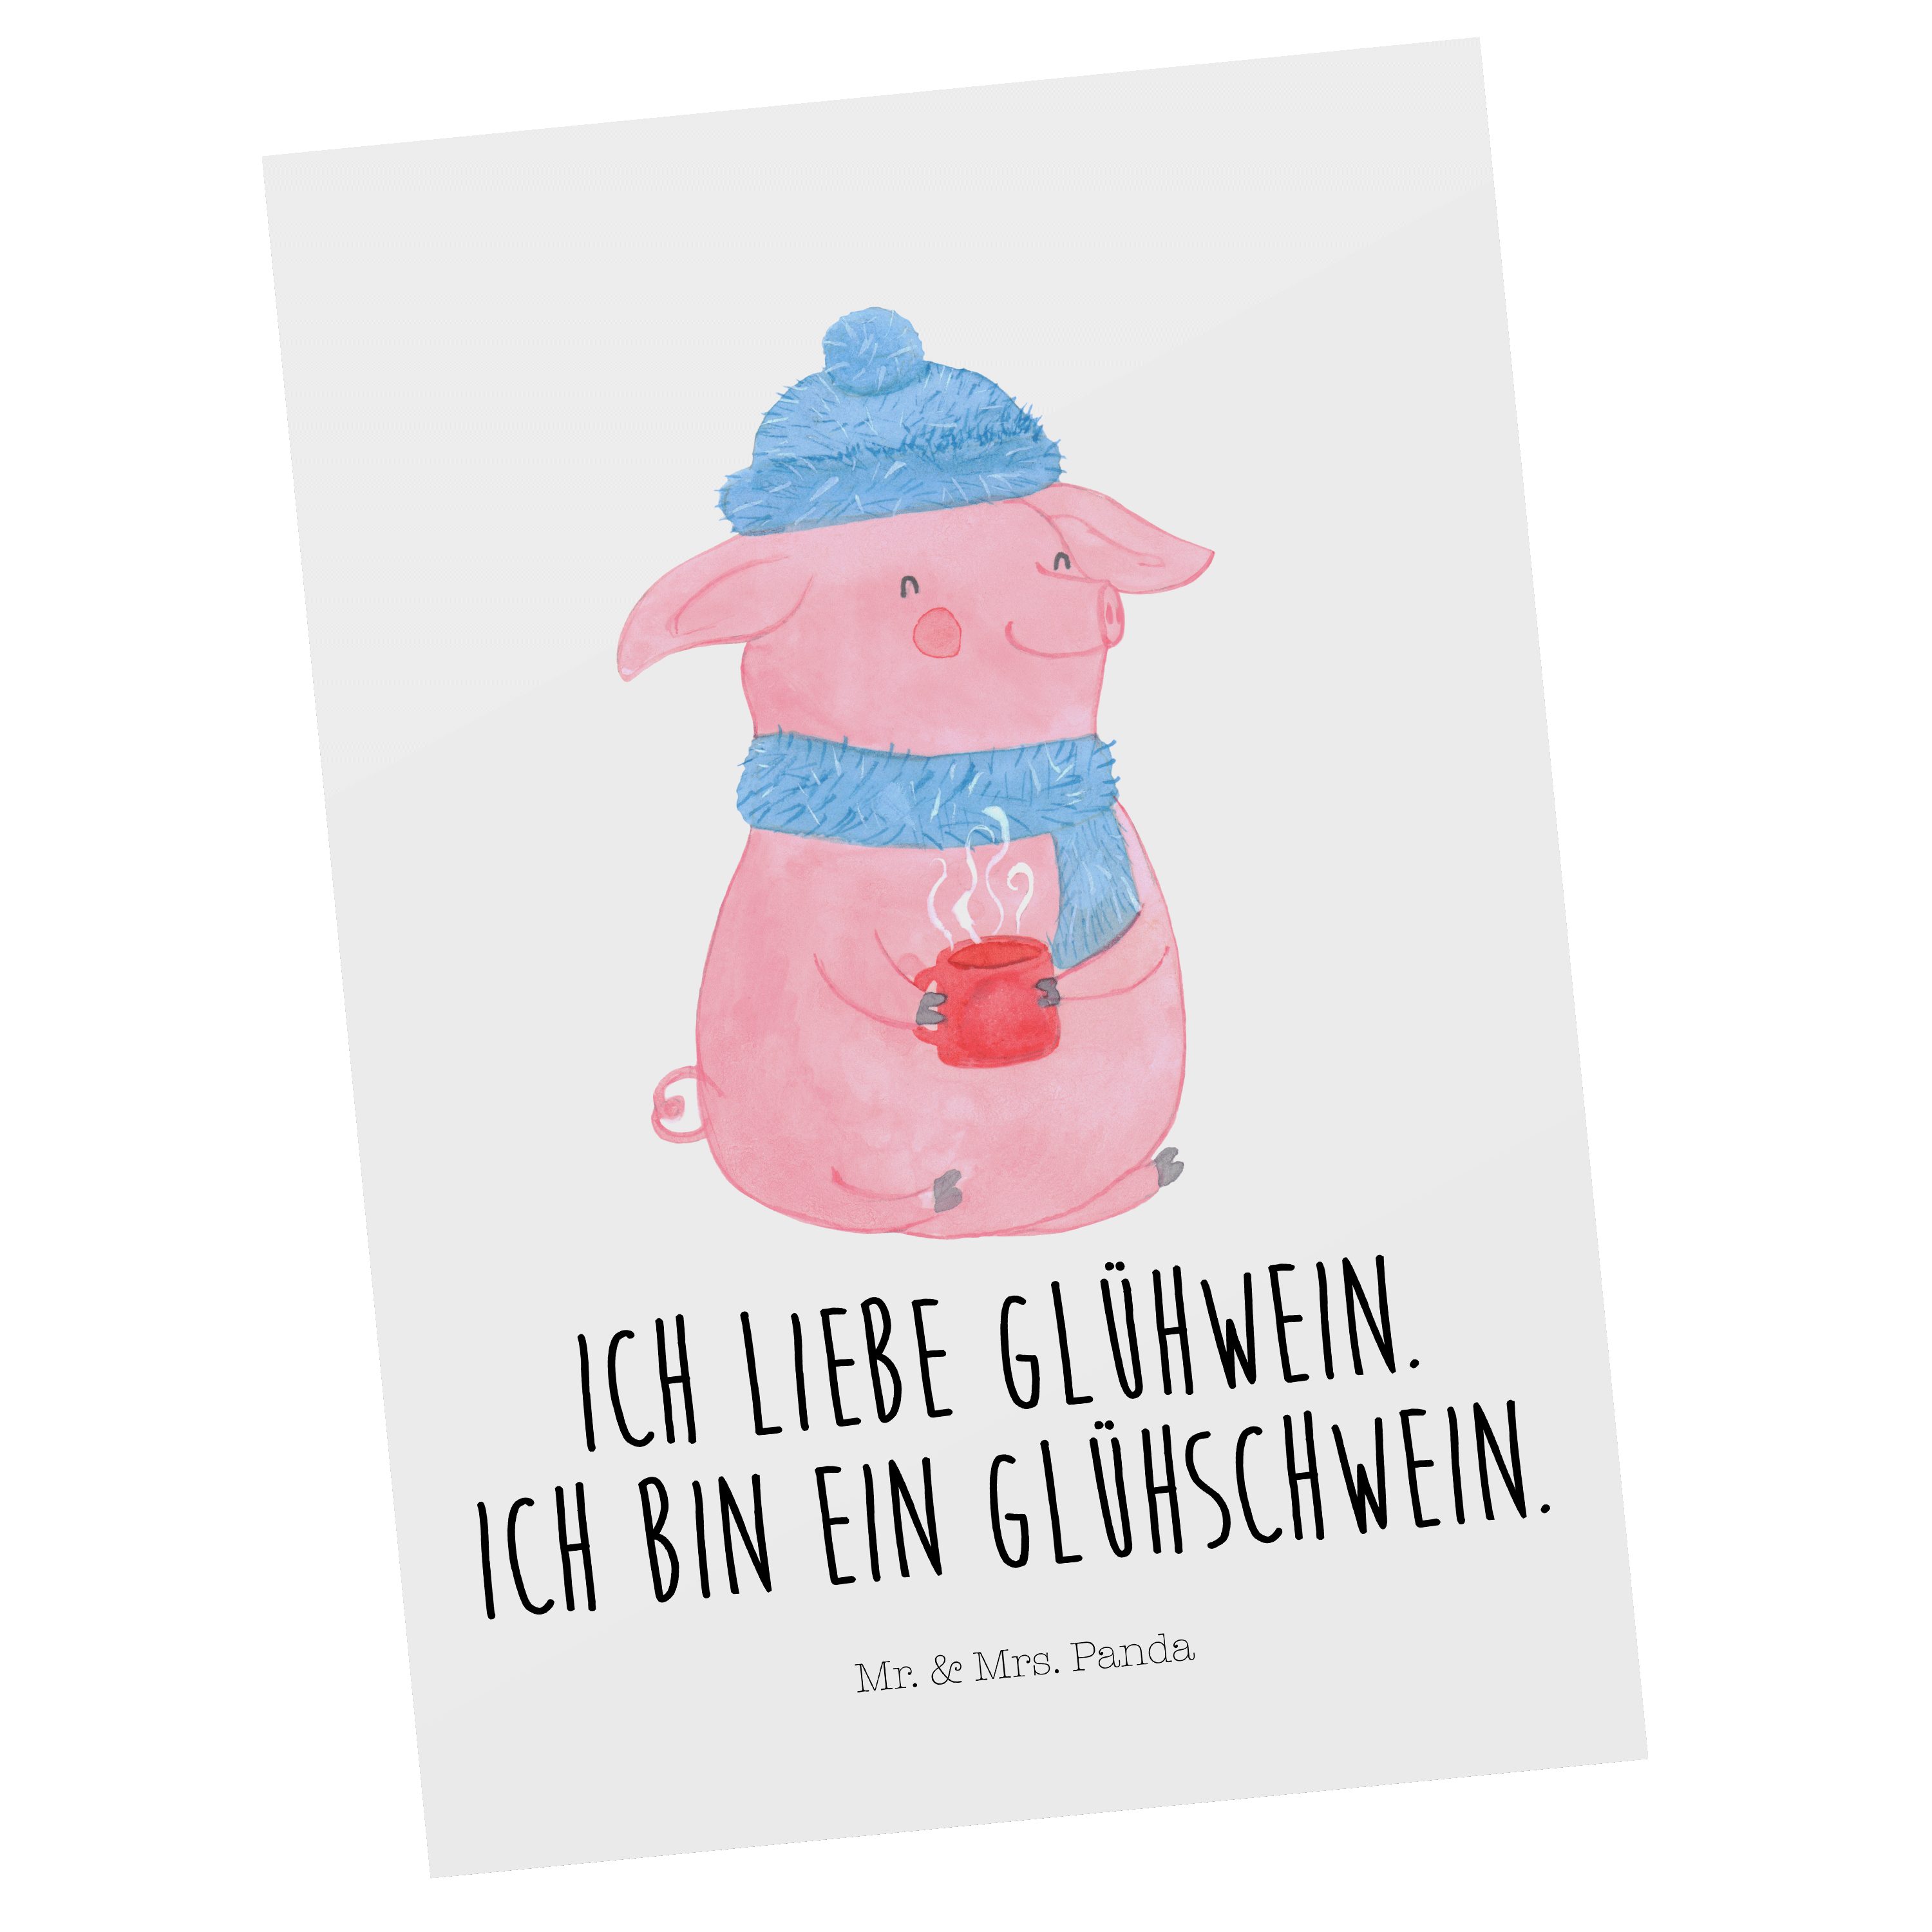 Mr. & Mrs. Panda Postkarte Glühschwein - Weiß - Geschenk, Ansichtskarte, Advent, Weihnachtsdeko